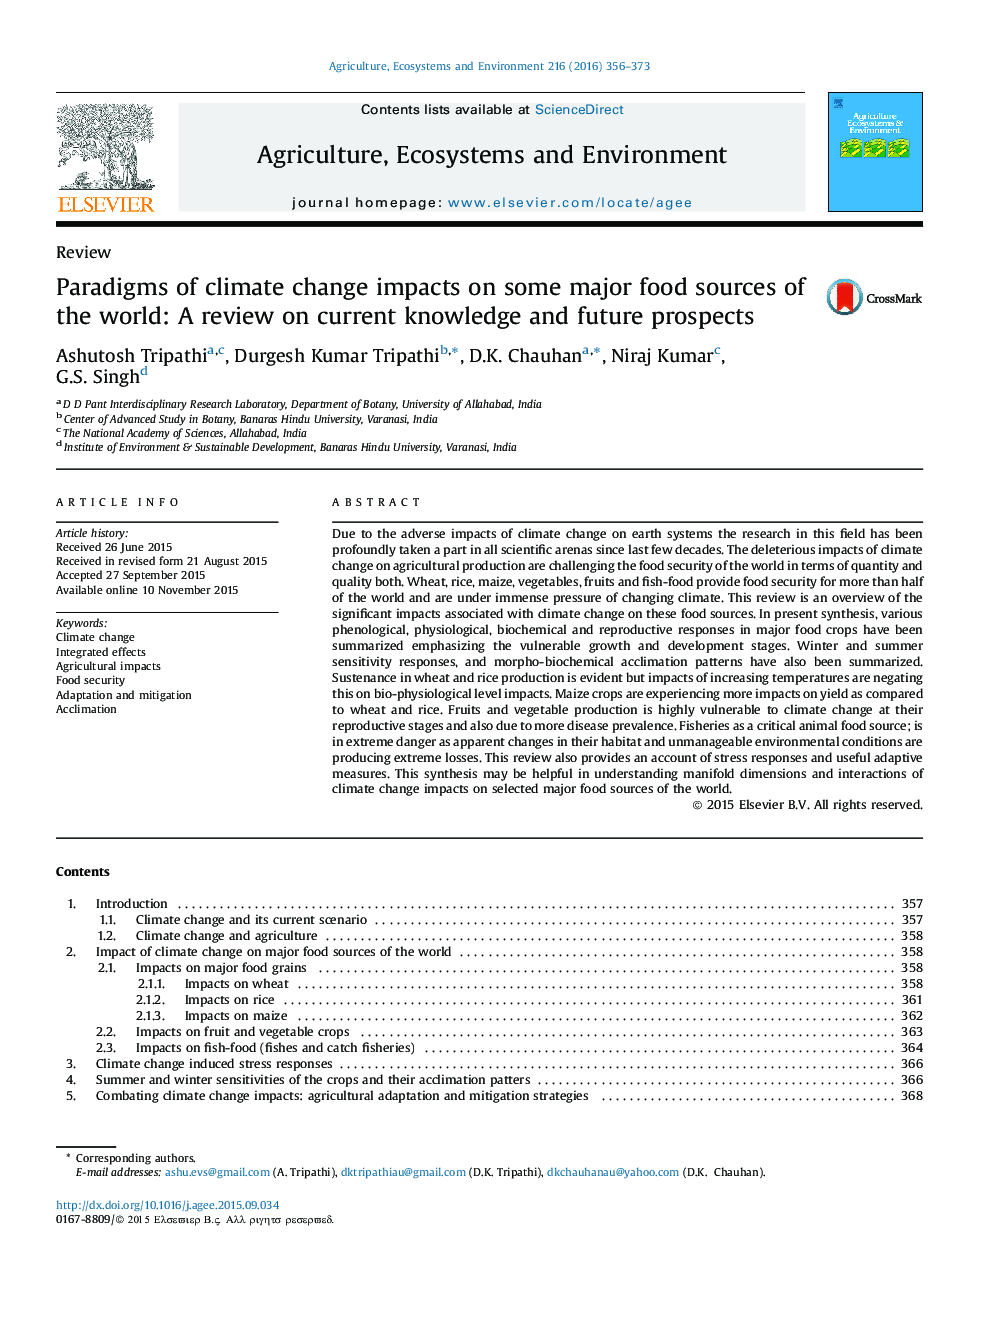 پارادایم تغییرات آب و هوایی بر برخی منابع غذای اصلی جهان تأثیر می گذارد: بررسی در مورد دانش فعلی و چشم انداز آینده 